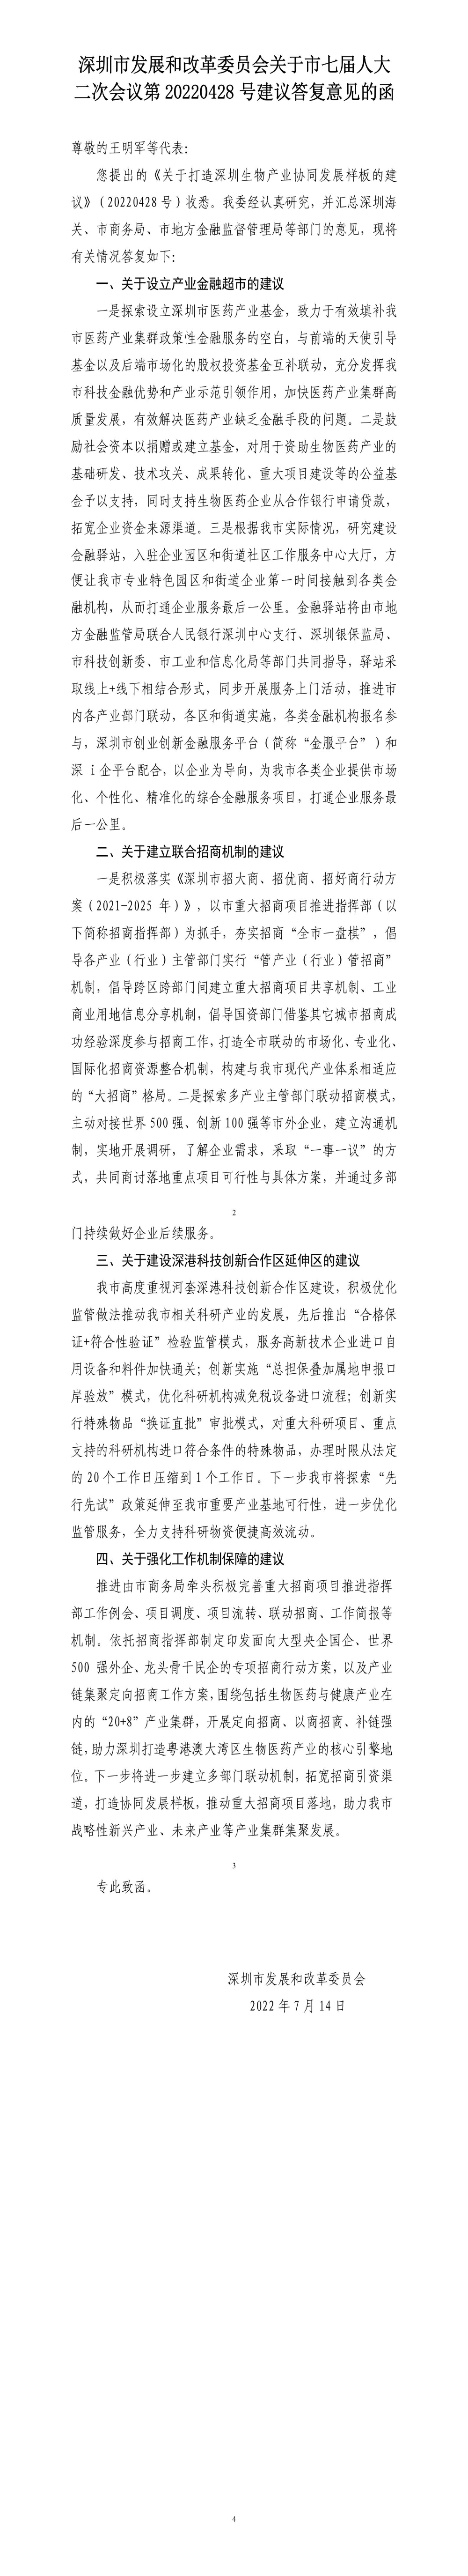 深圳市发展和改革委员会关于市七届人大二次会议第20220428号建议答复意见的函.jpg